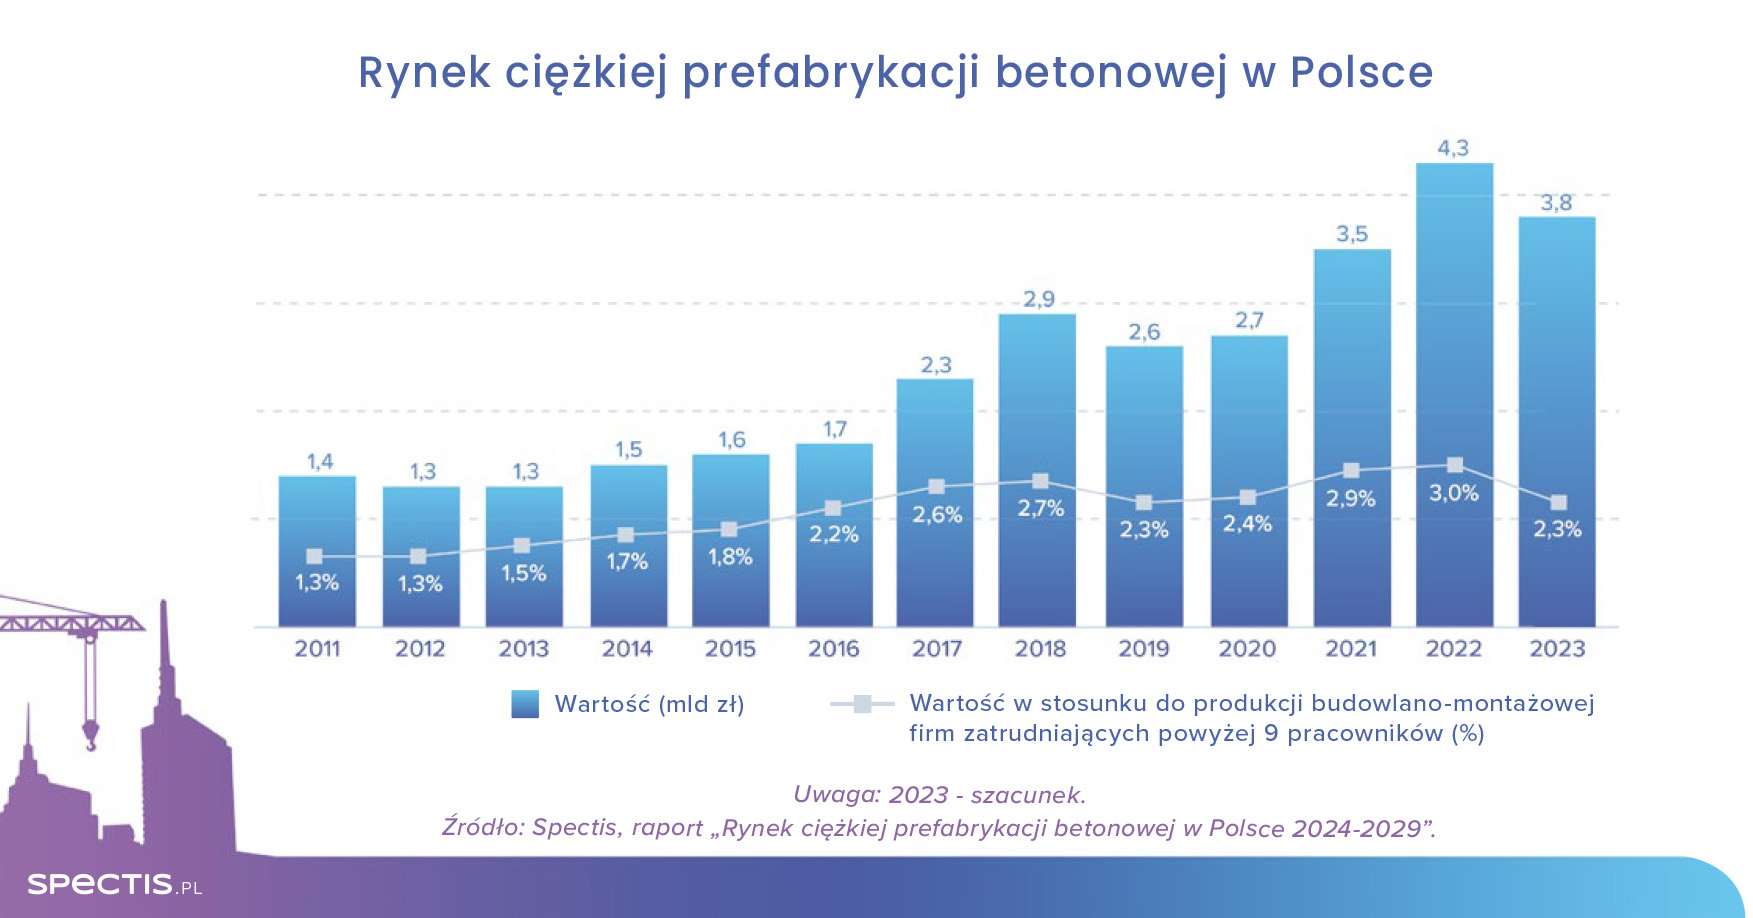 Wartość rynku ciężkiej prefabrykacji betonowej w Polsce w 2024 r. sięgnie 4 mld zł